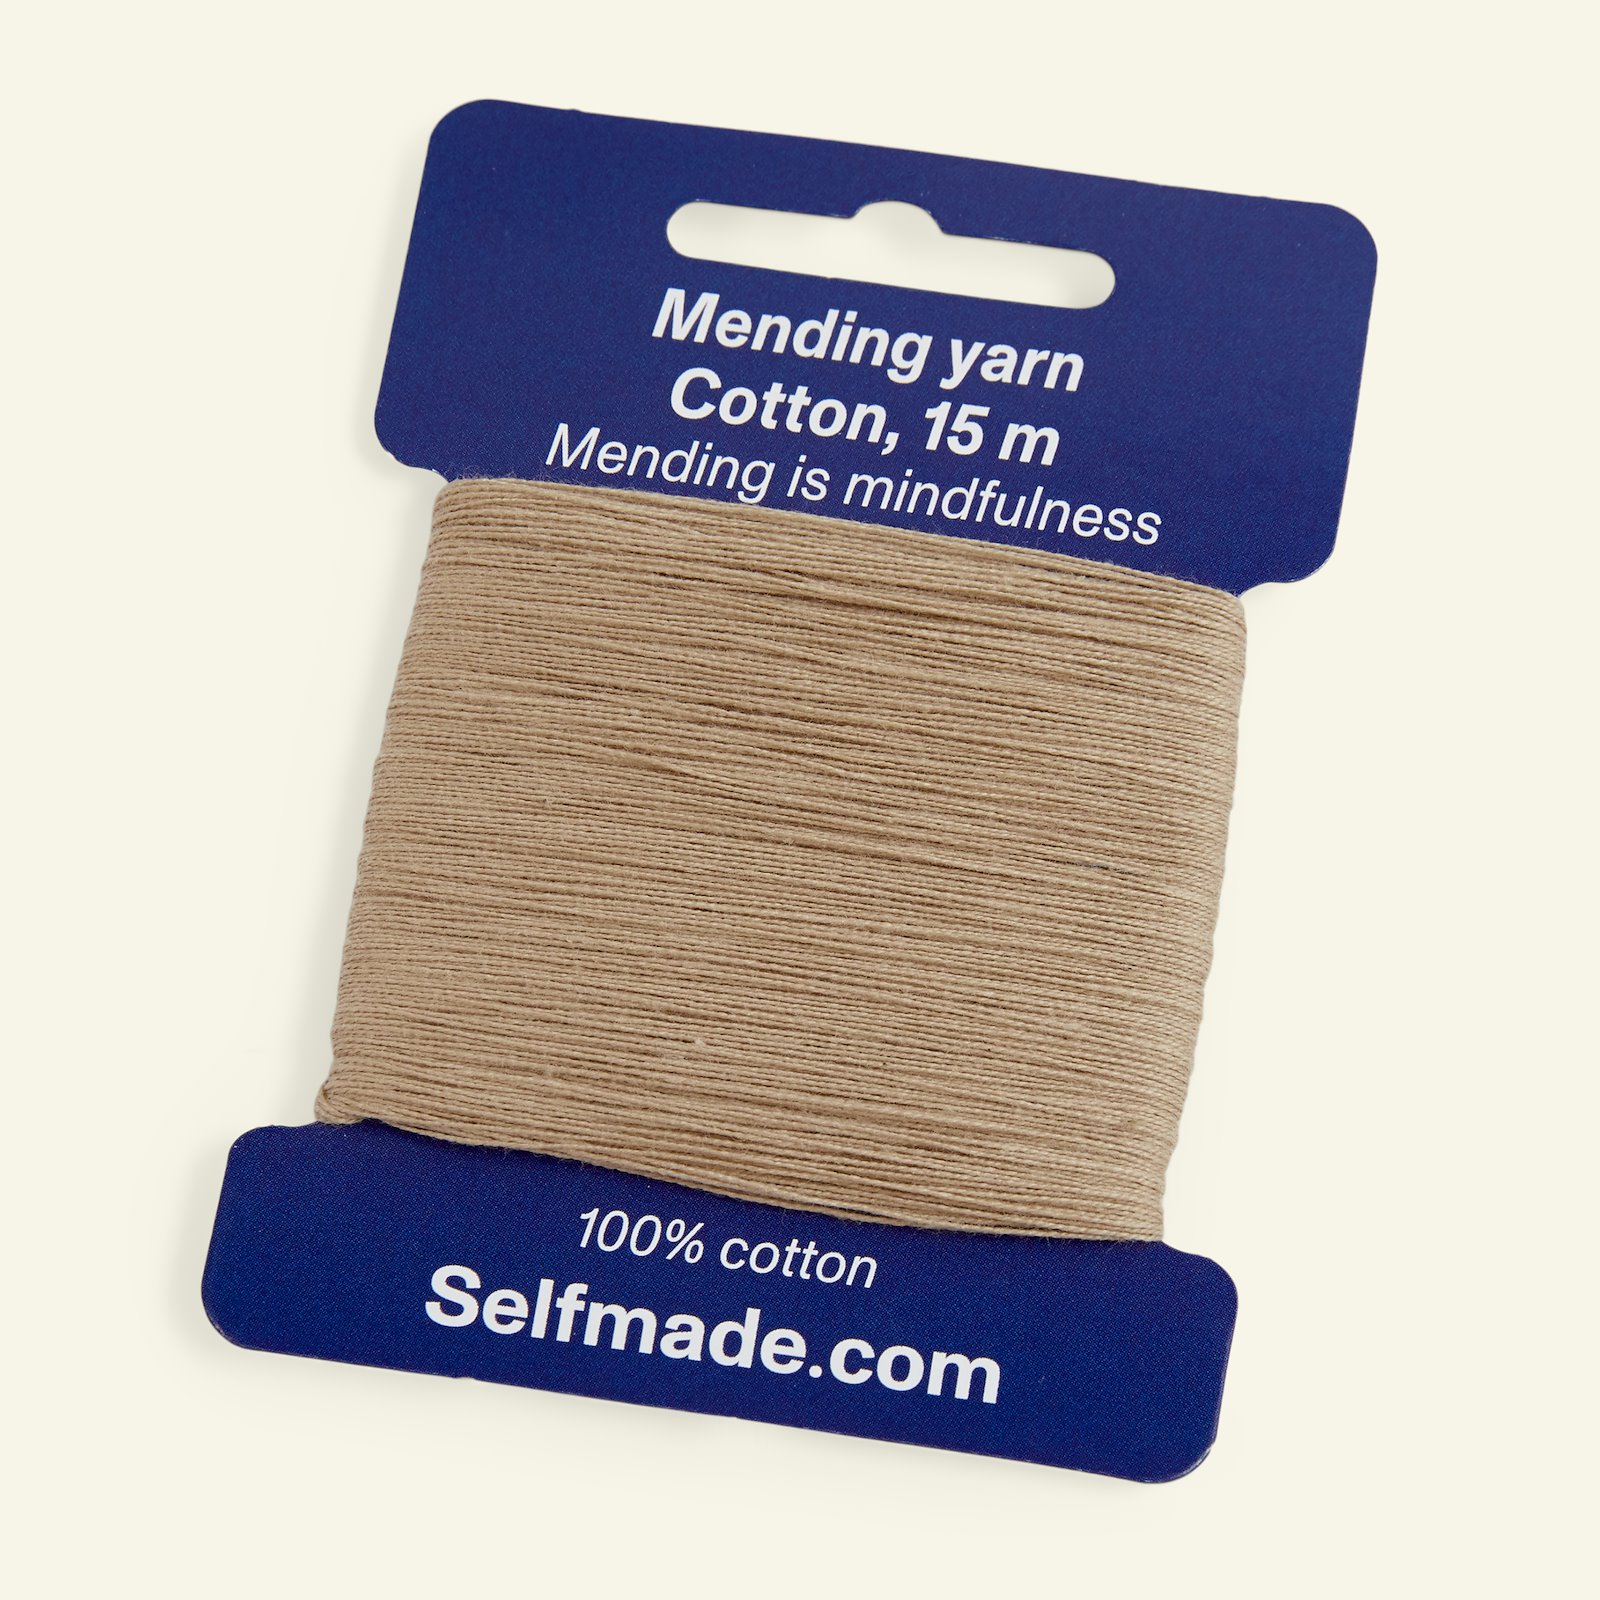 Mending yarn cotton beige 15m 35552_pack